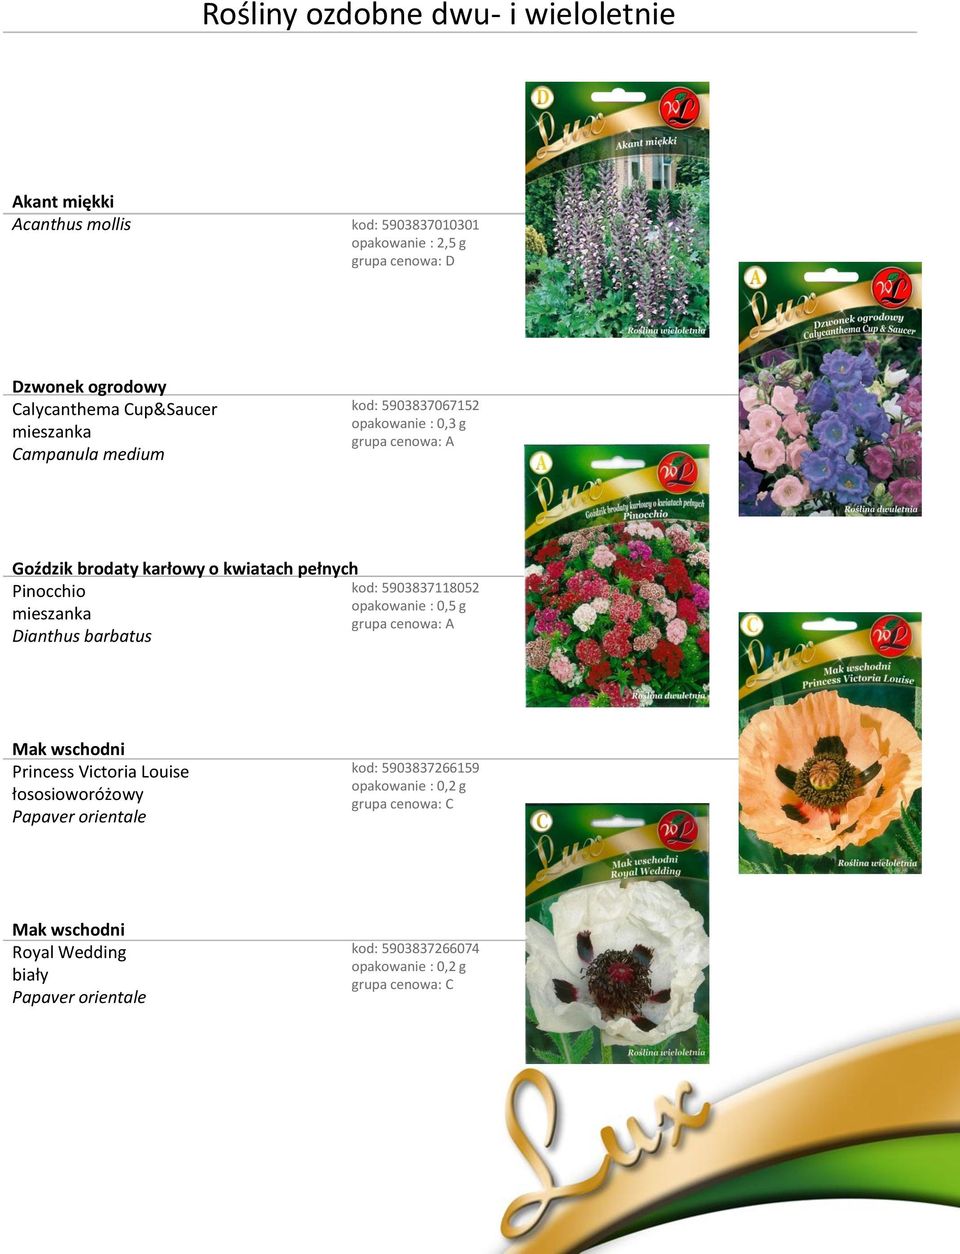 kwiatach pełnych Pinocchio kod: 5903837118052 mieszanka Dianthus barbatus Mak wschodni Princess Victoria Louise łososioworóżowy